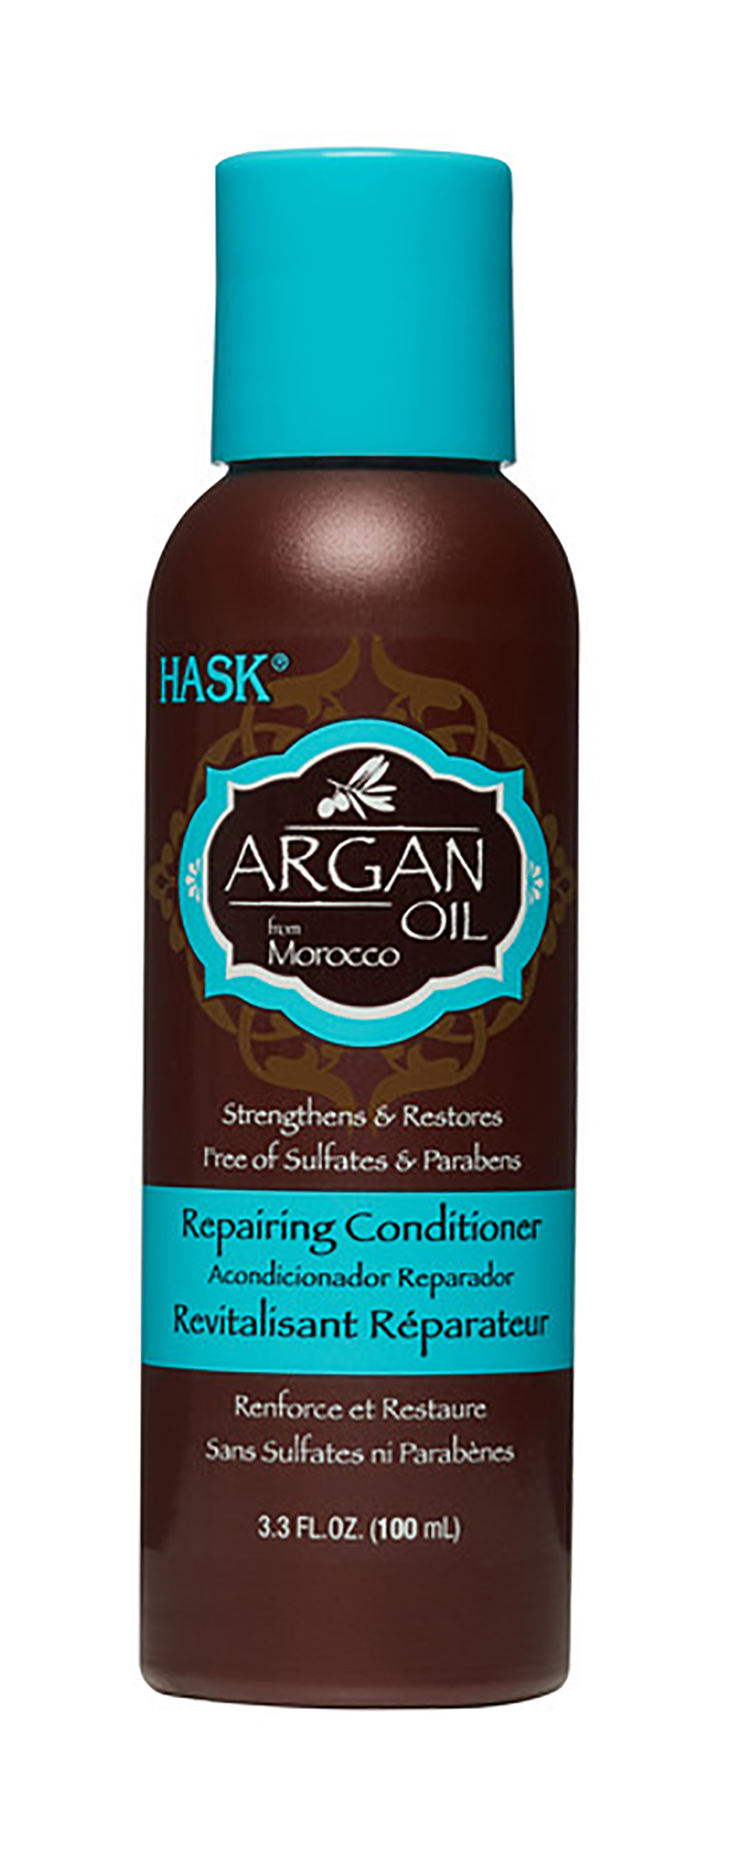 Кондиционер для волос Hask Argan Oil Repairing Conditioner Travel Size 100 мл hask кондиционер увлажняющий с конопляным маслом hemp oil moisturizing conditioner